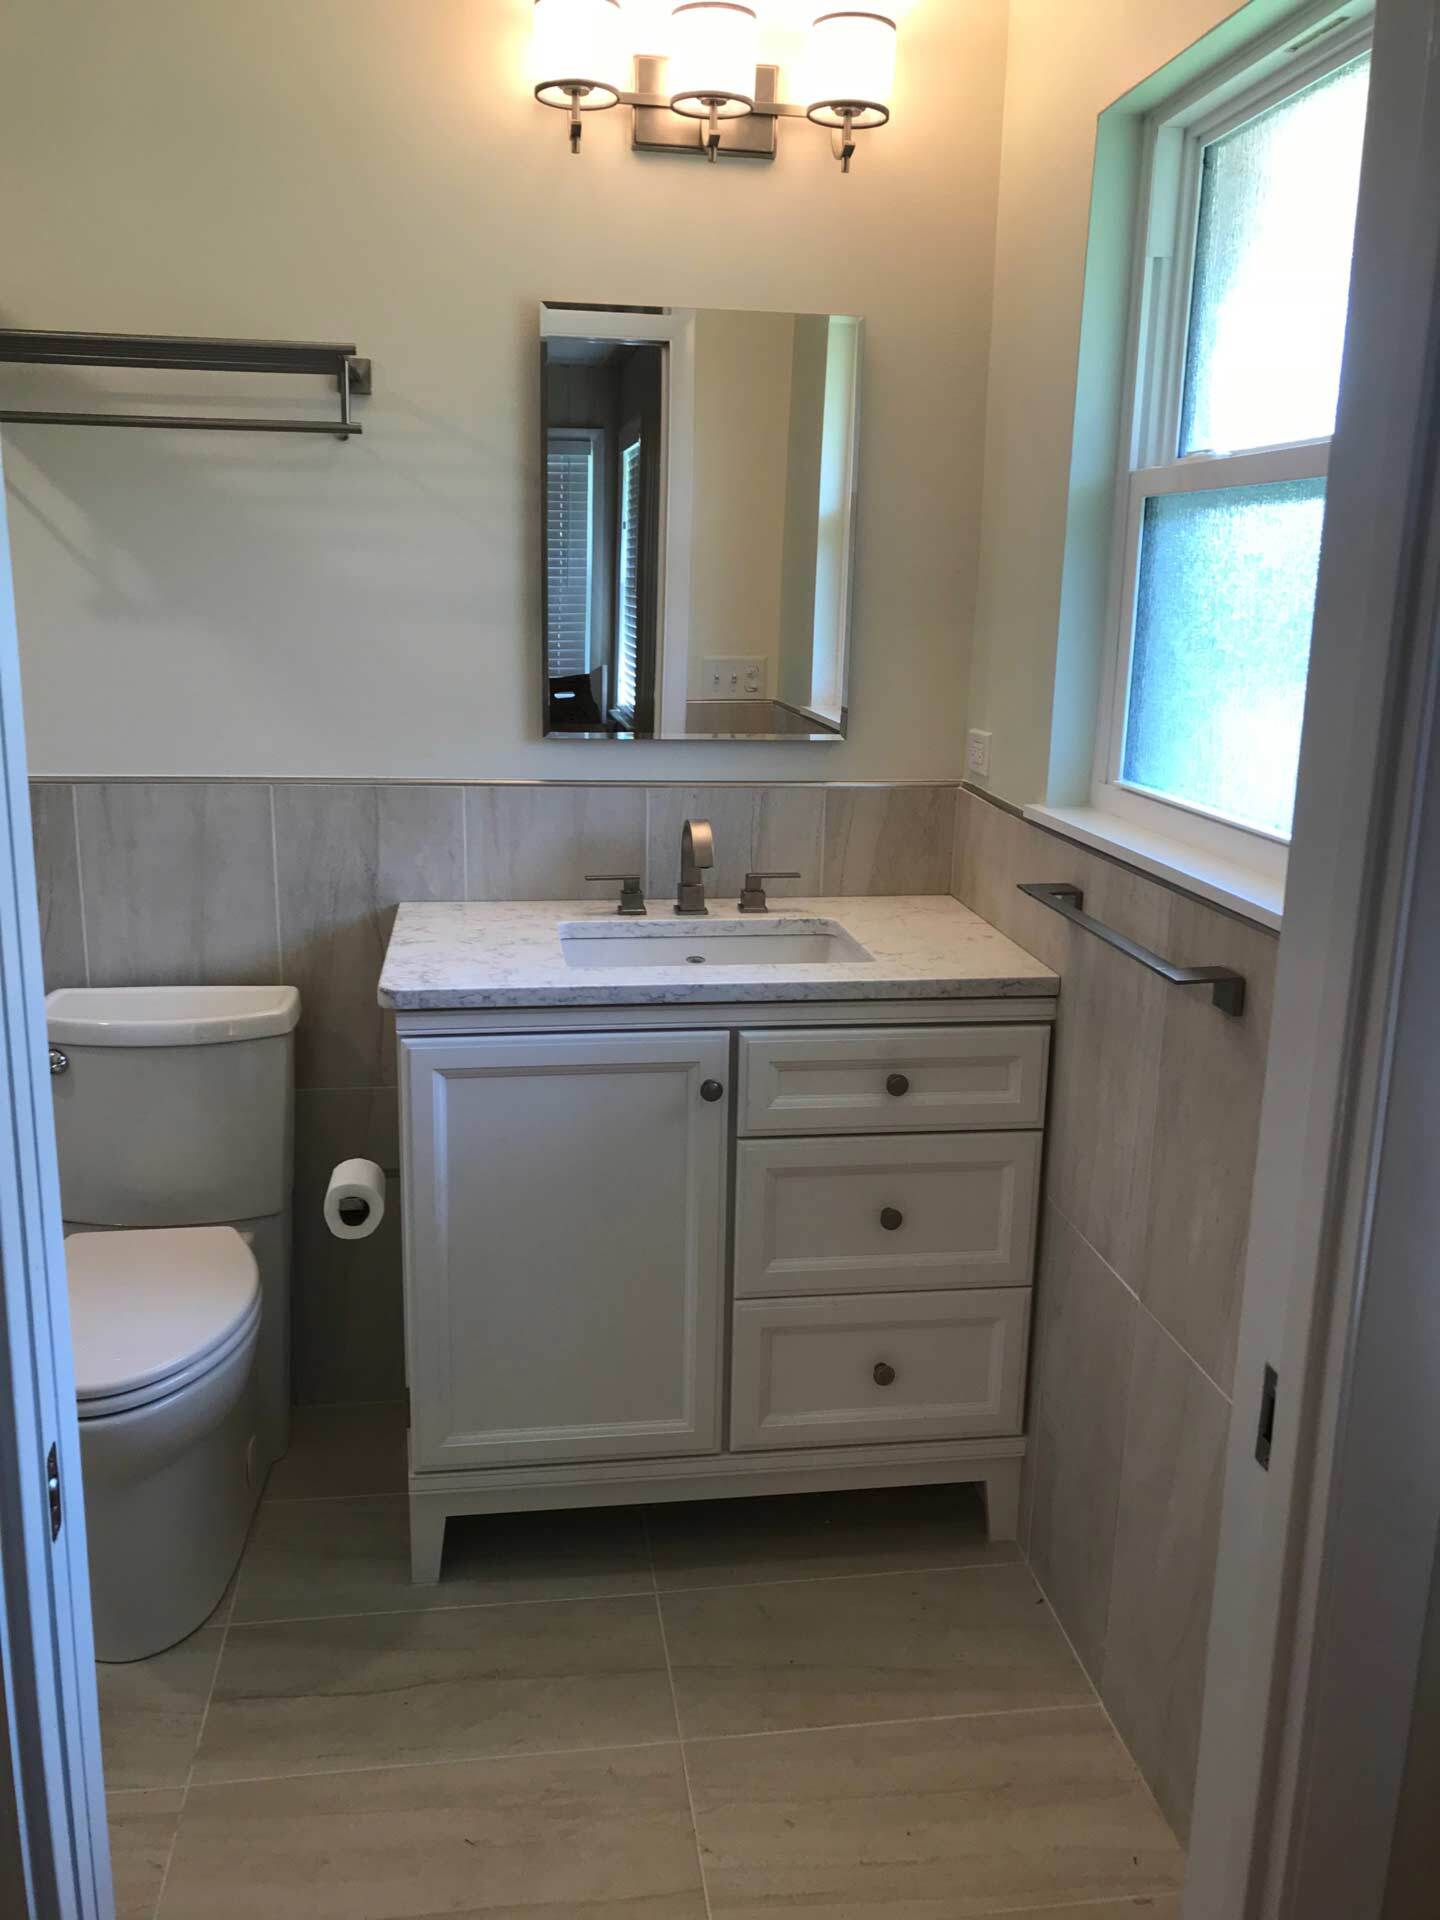 Hot Springs Bathroom Remodel with vanity